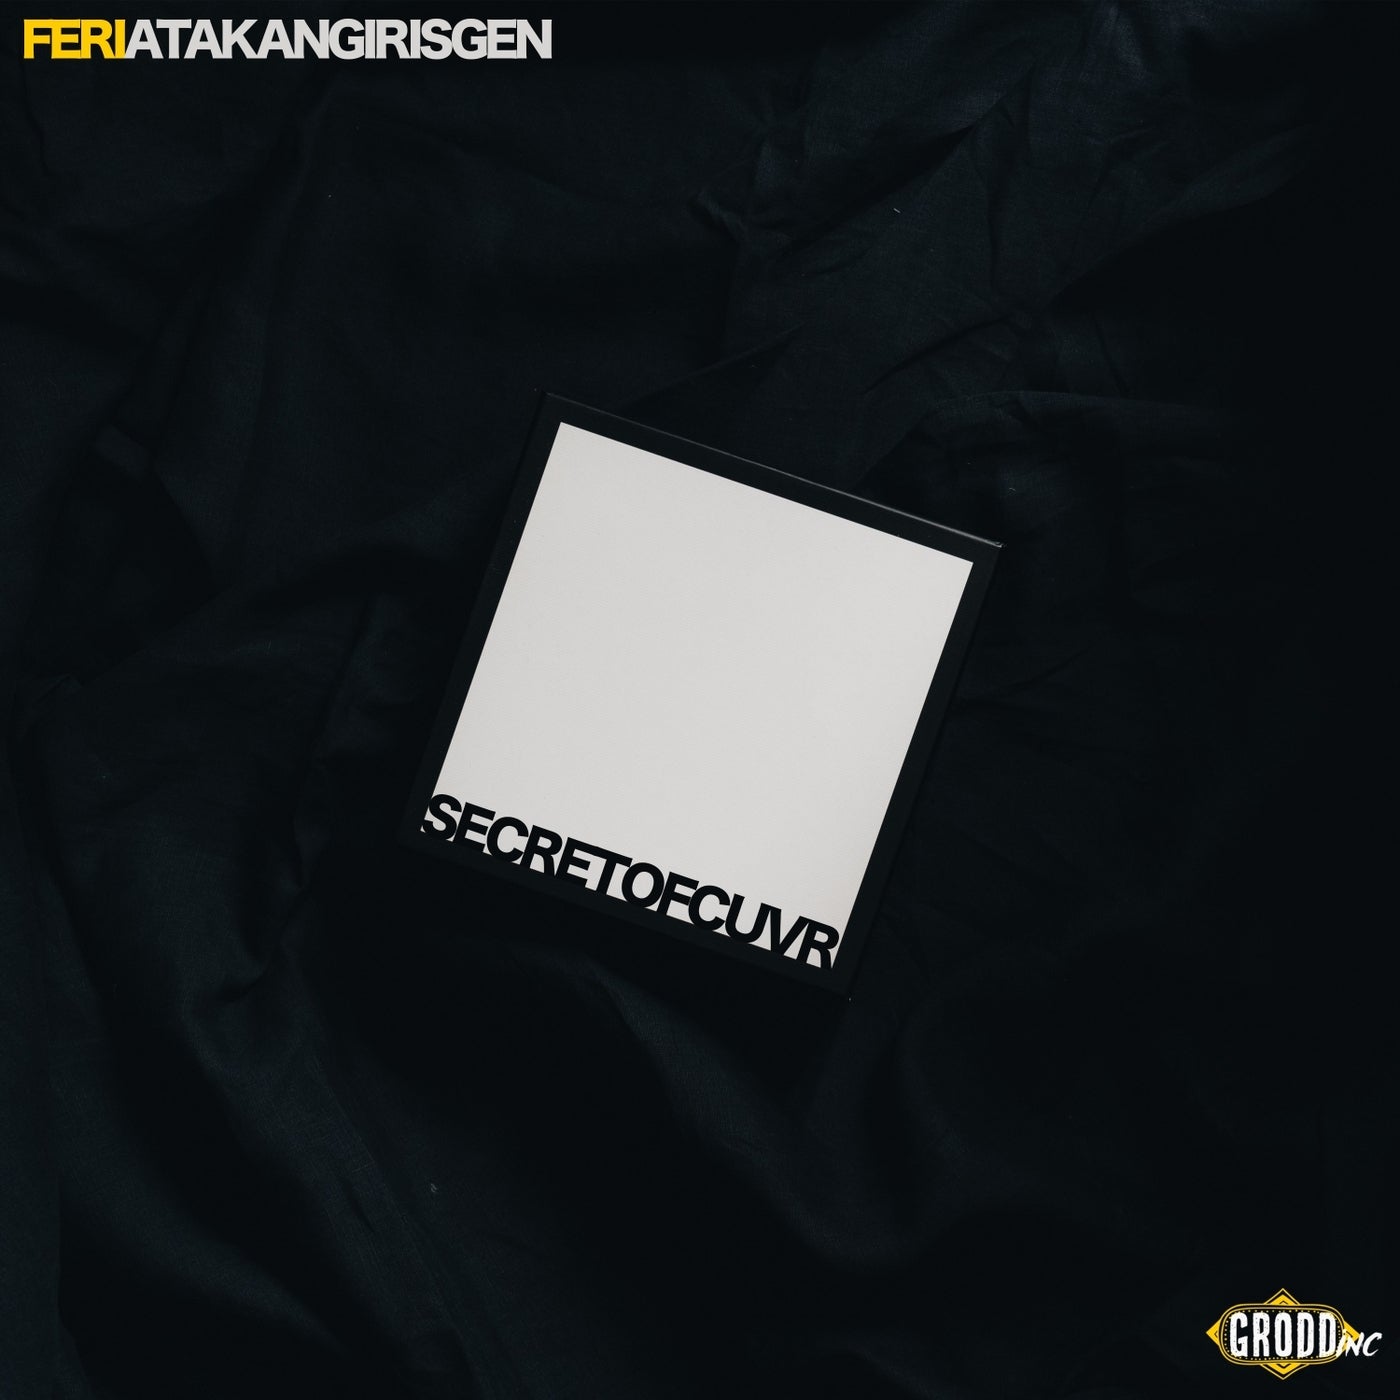 Feri - Secret Of Cuvr feat. Atakan Girisgen (Original Mix)